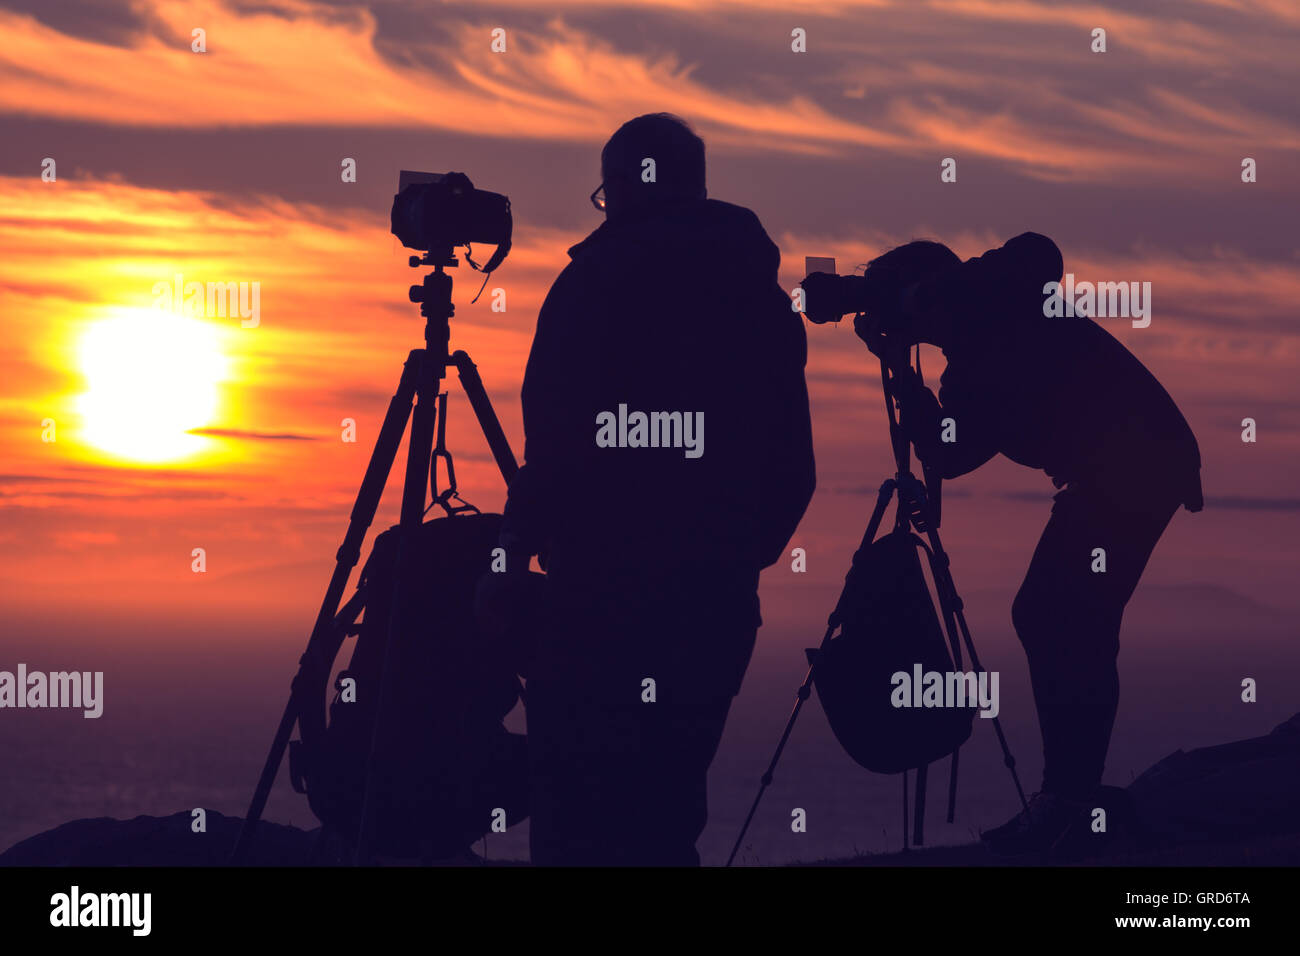 Fotografen-Silhouetten auf Klippe gegen bunte Dämmerung Himmel Stockfoto